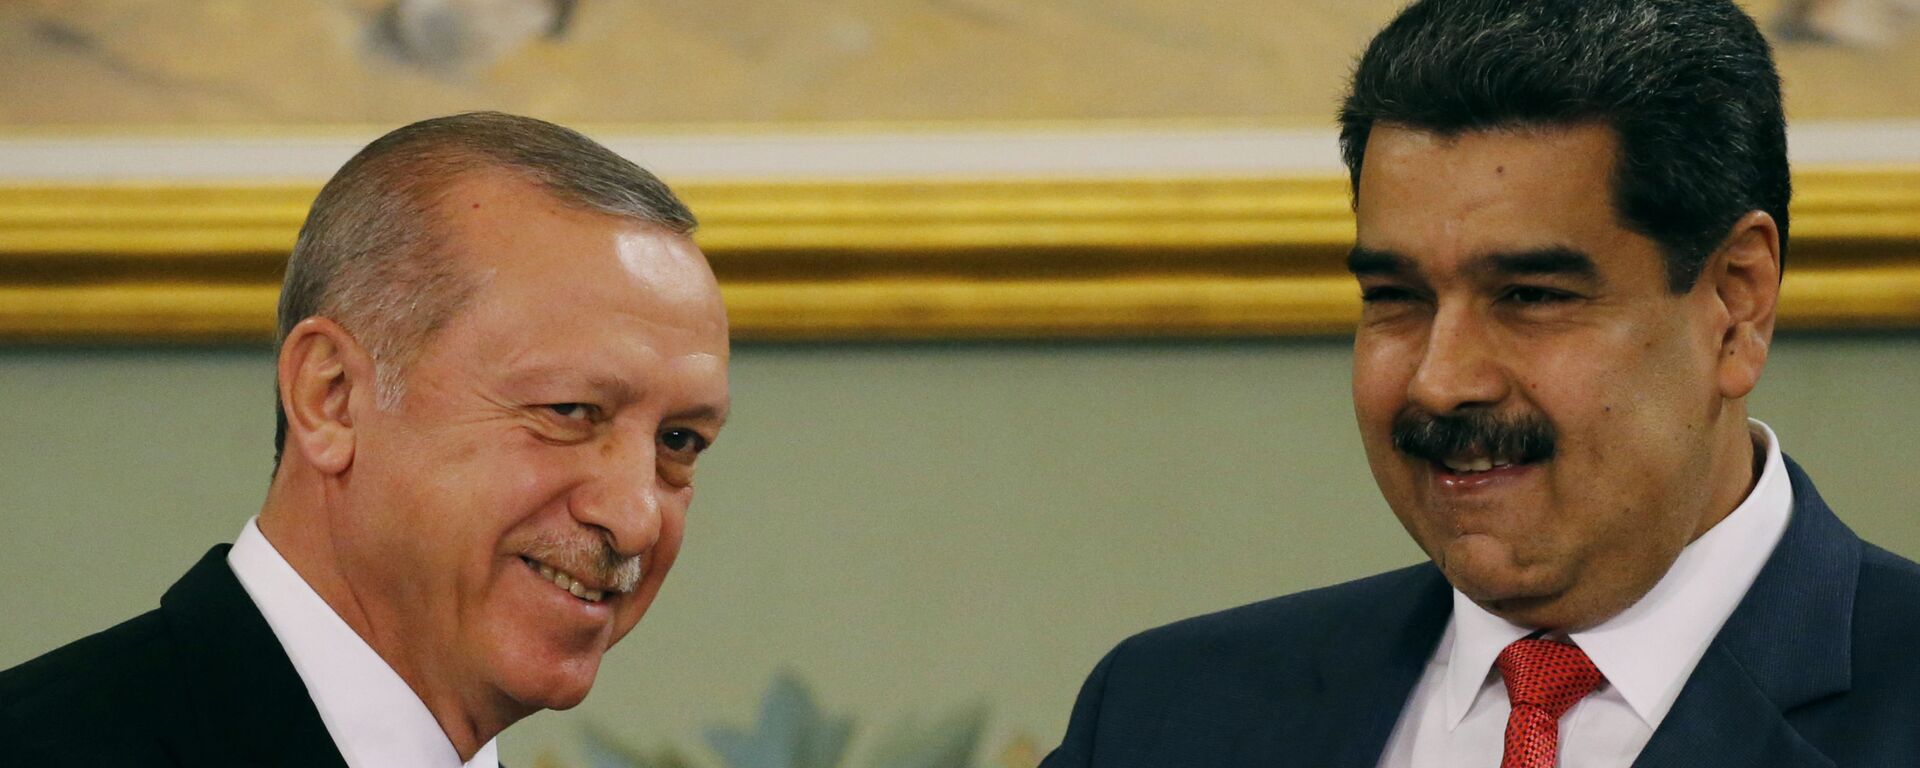 Recep Tayyip Erdogan, presidente de Turquía, y Nicolás Maduro, presidente de Venezuela - Sputnik Mundo, 1920, 21.12.2021